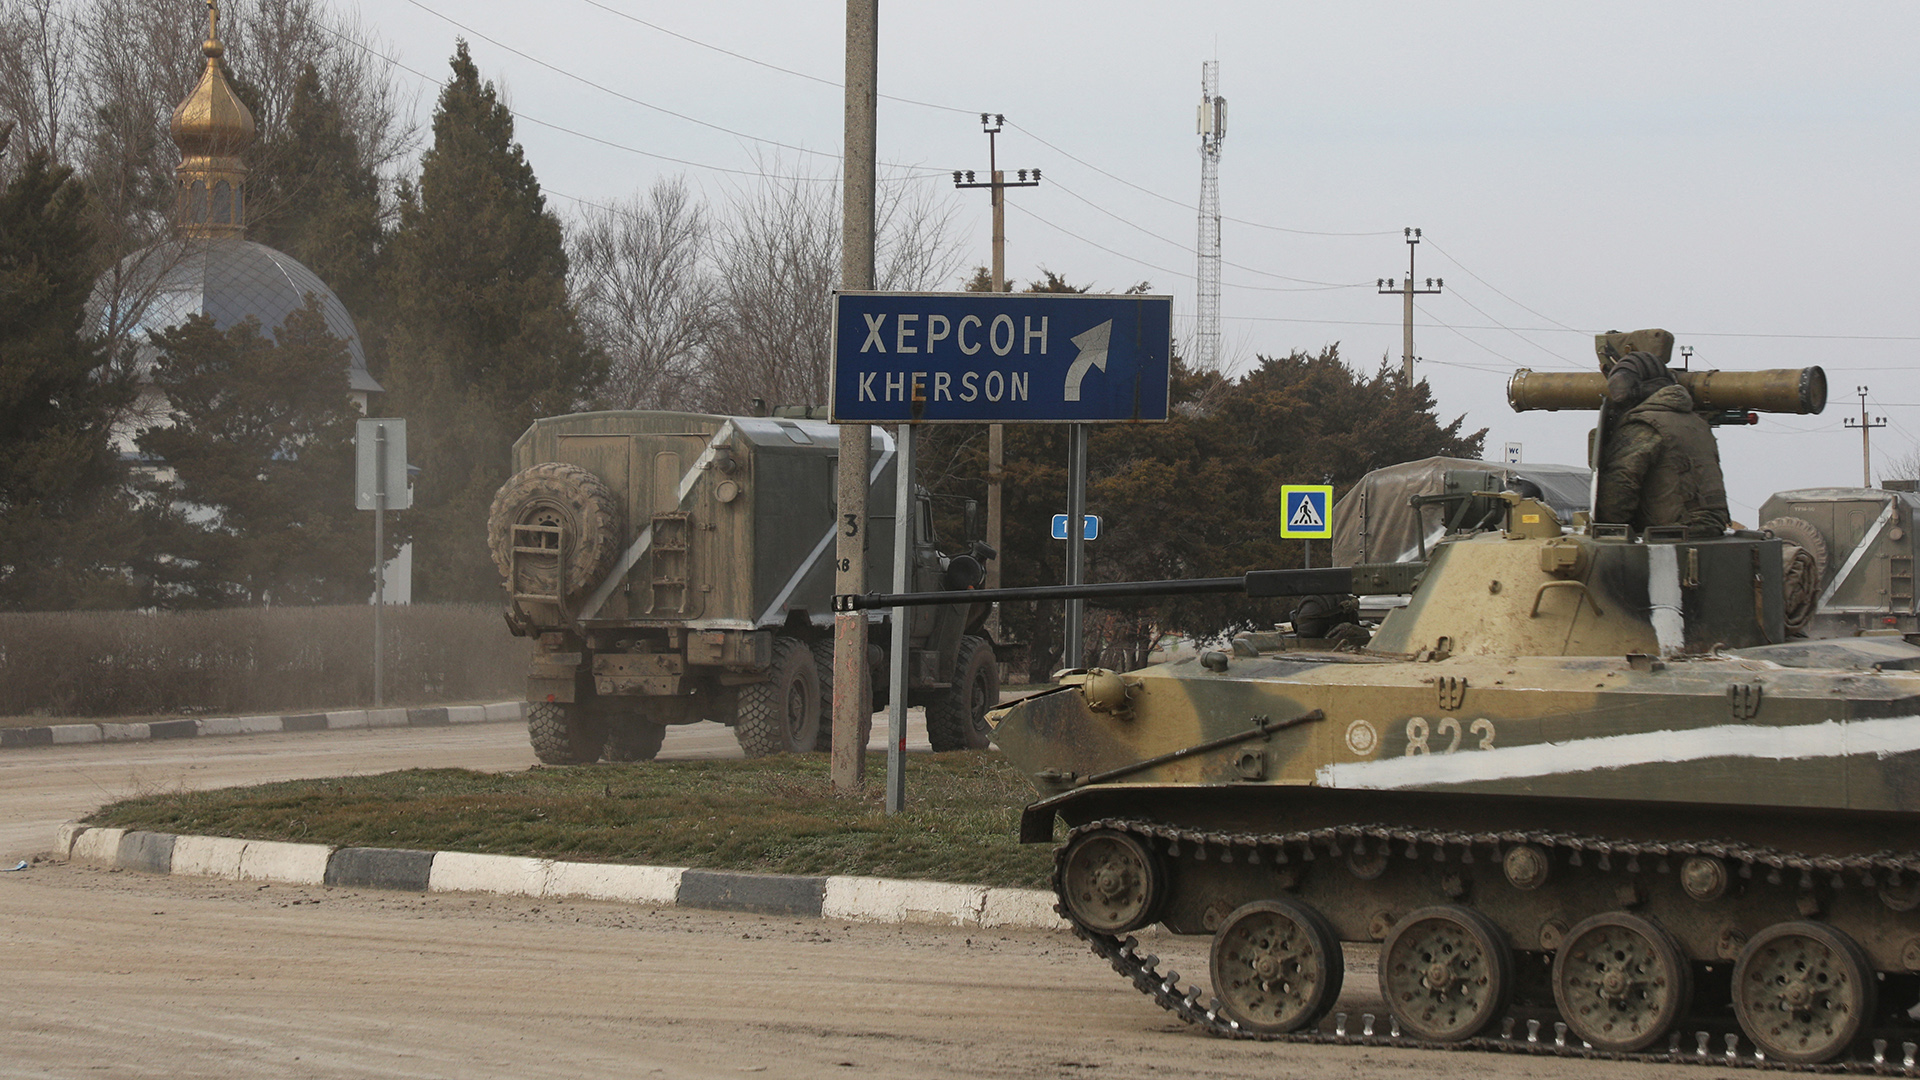 Militärfahrzeuge fahren auf einer Straße in Armyansk, Krim Halbinsel | REUTERS